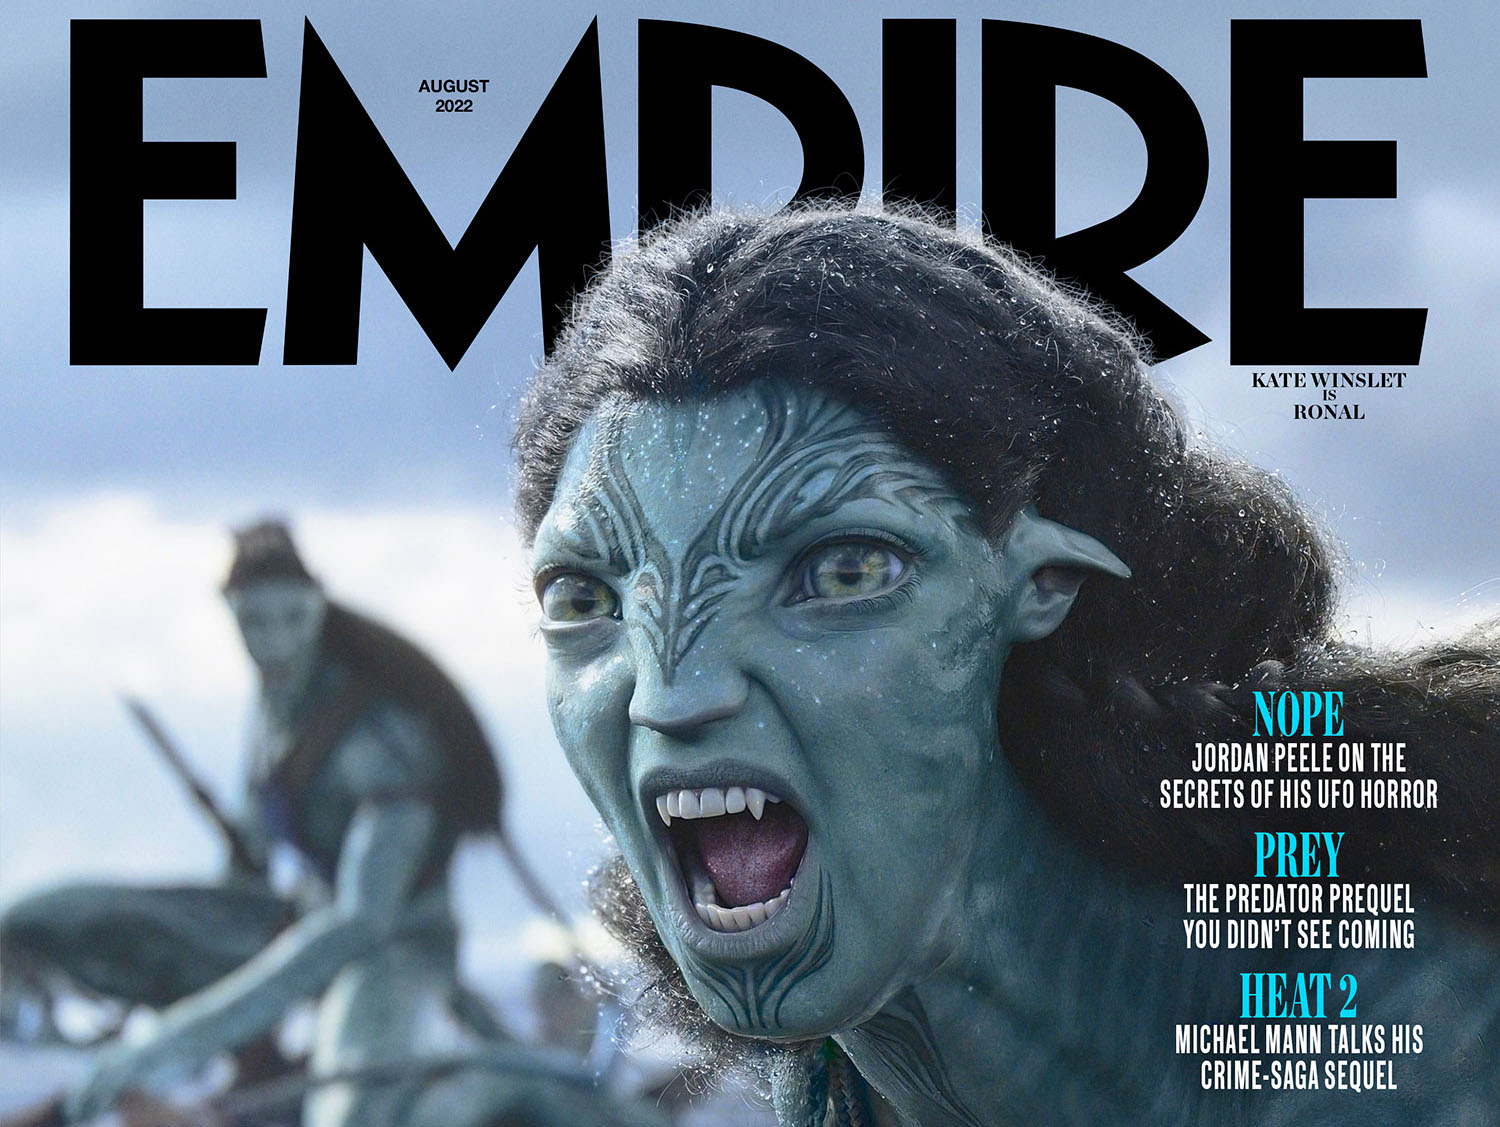 Nhân vật trong Avatar 2 của Kate Winslet xuất hiện ở trang bìa tạp chí Empire số ra tháng 7 năm 2022